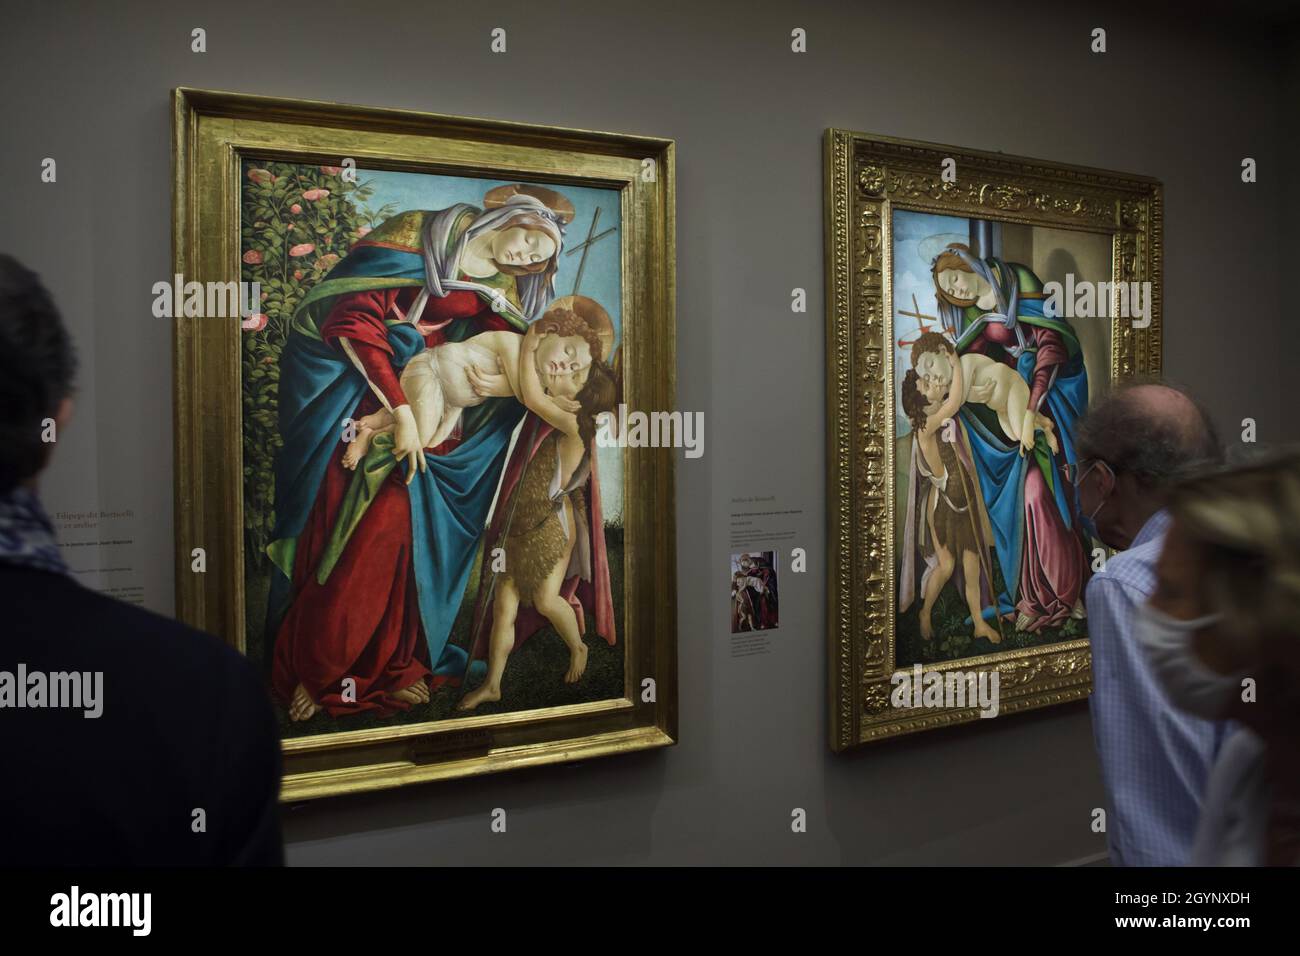 Besucher mit Gesichtsmasken sehen zwei sehr identische Gemälde des italienischen Renaissance-Malers Sandro Botticelli, die in seiner Retrospektive im Musée Jacquemart-André in Paris gezeigt wurden. Das linke Gemälde „Madonna mit Kind und der junge Heilige Johannes der Täufer“, das Sandro Botticelli 1505 selbst schuf, wurde von der Palatin-Galerie (Galleria Palatina) in Florenz, Italien, ausgeliehen. Während das rechte Gemälde des gleichen Titels, das von der Werkstatt von Botticelli zwischen 1505 und 1510 geschaffen wurde, aus einer Privatsammlung entliehen ist. Die Ausstellung zu Sandro Botticelli läuft bis 24 Stockfoto